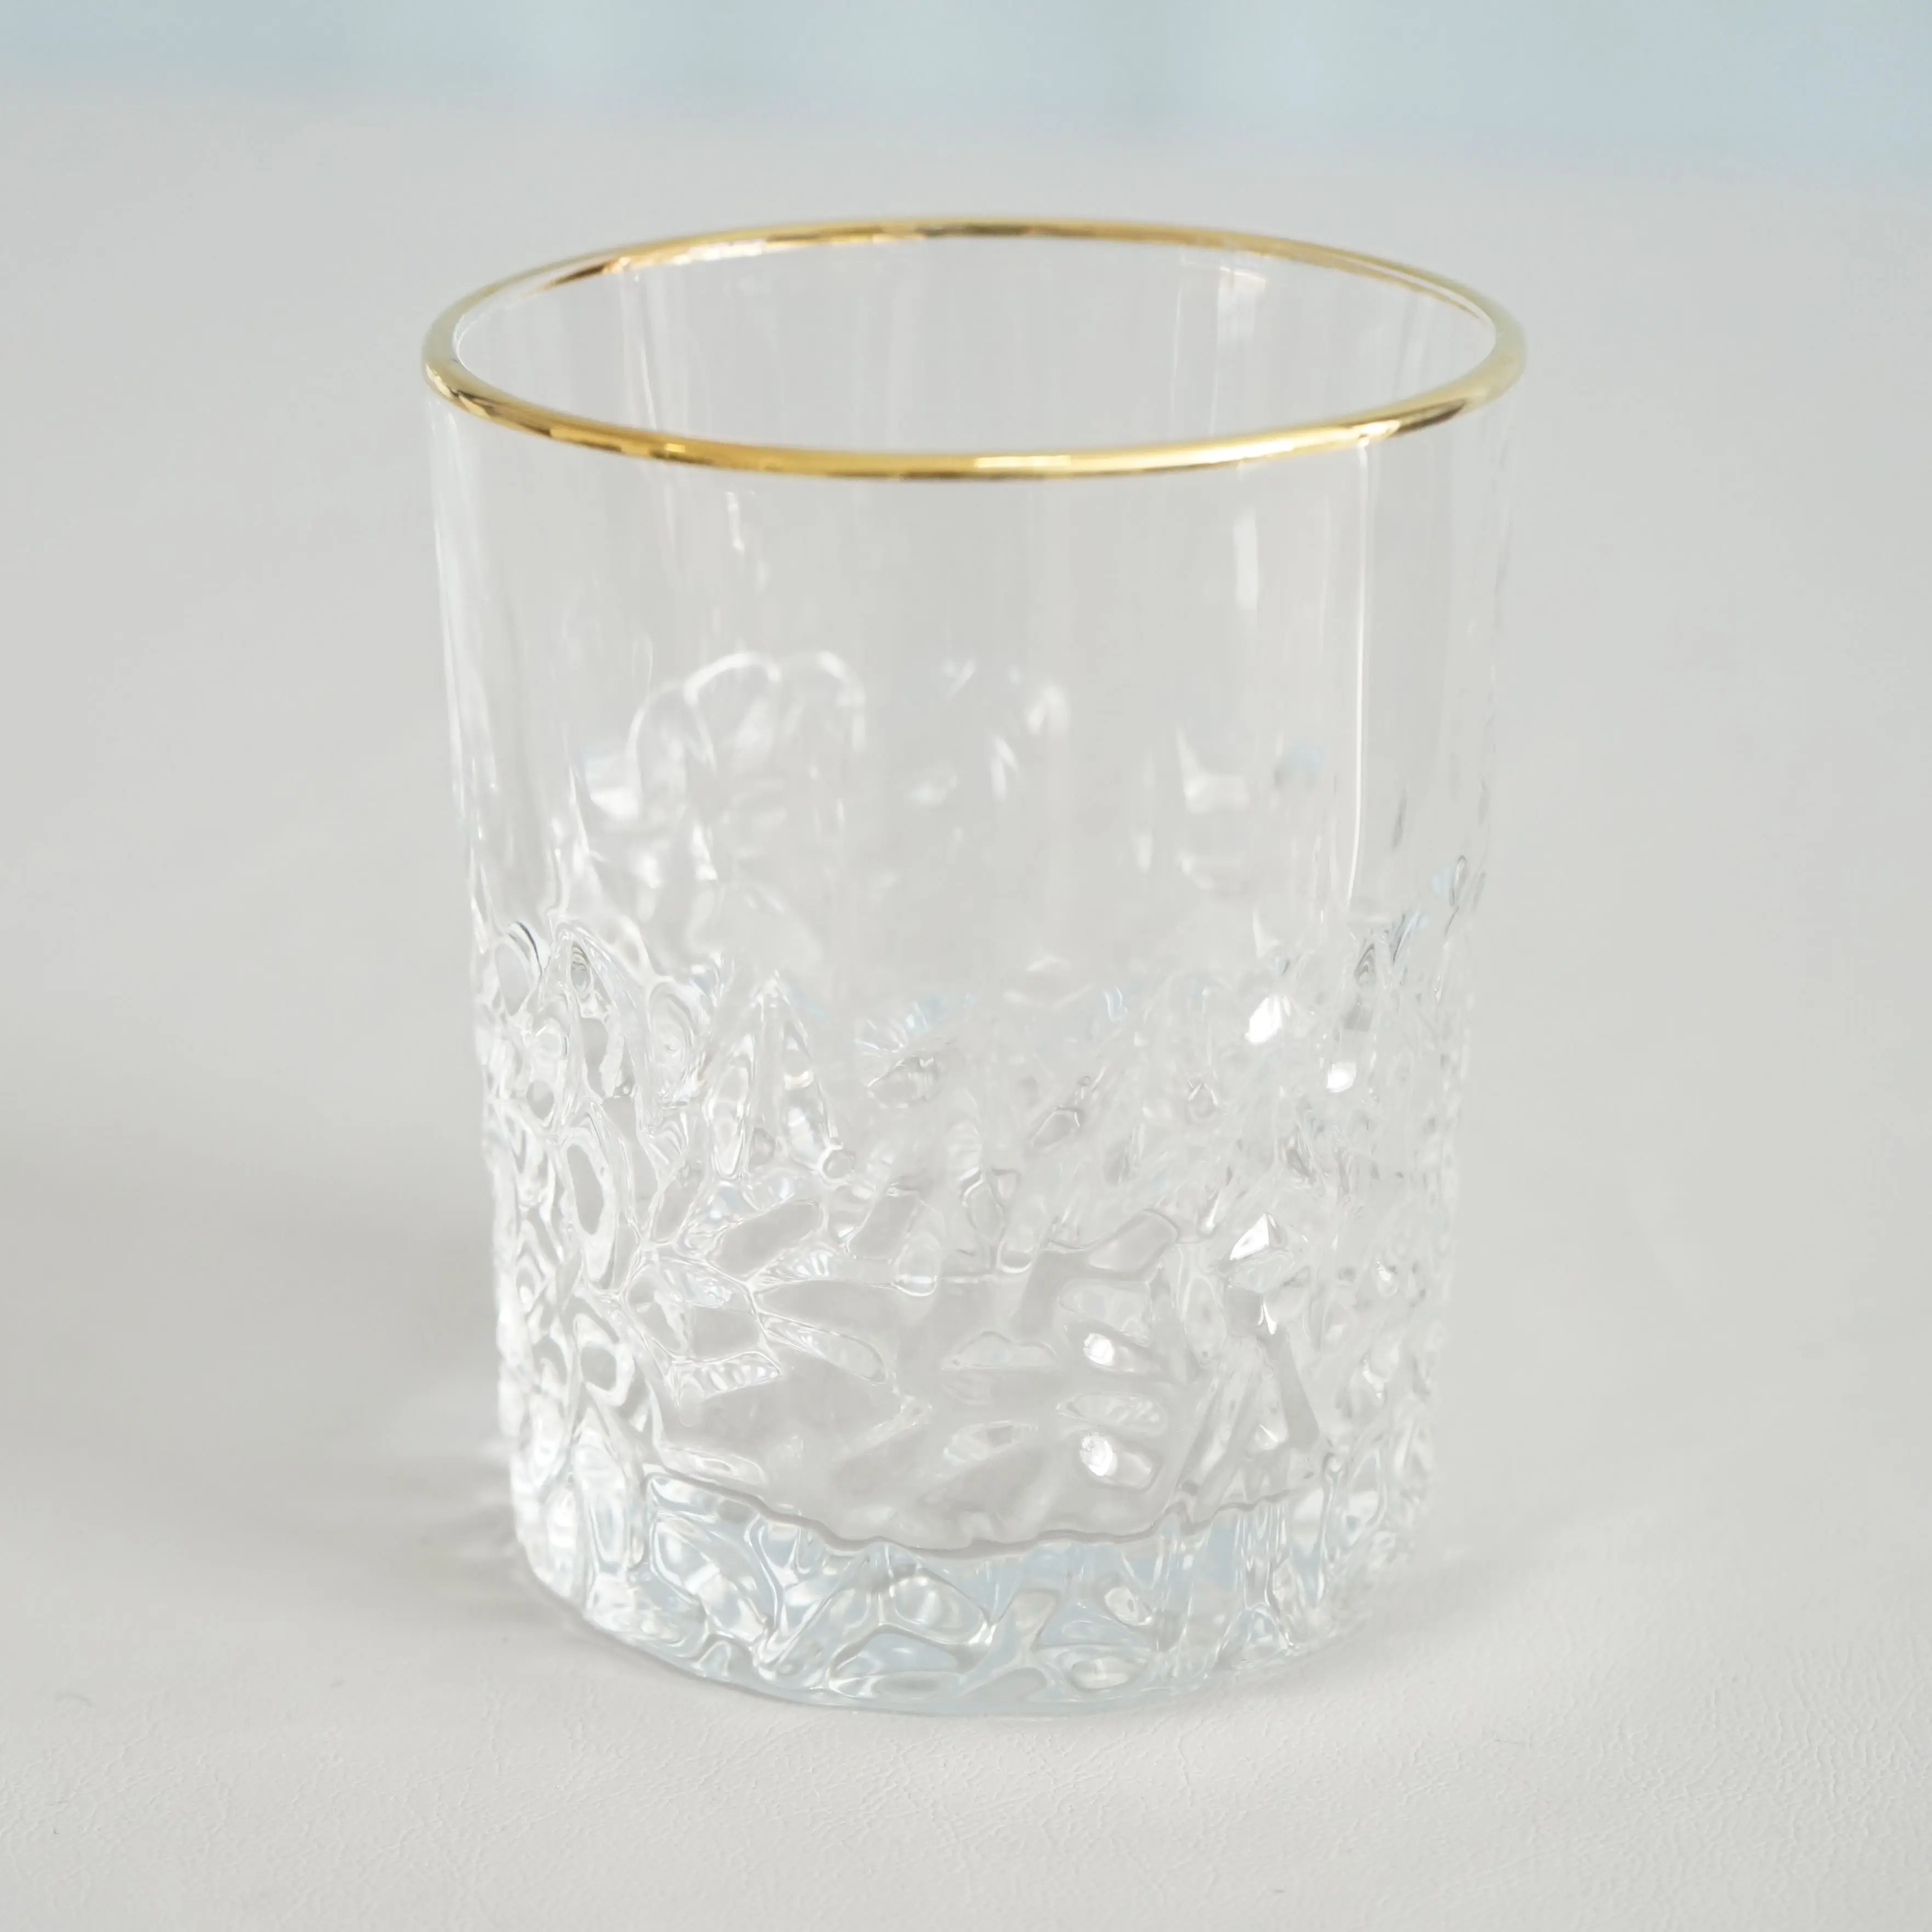 10oz custom heavy bottom engraved rock glasses whiskey glass with gold rim